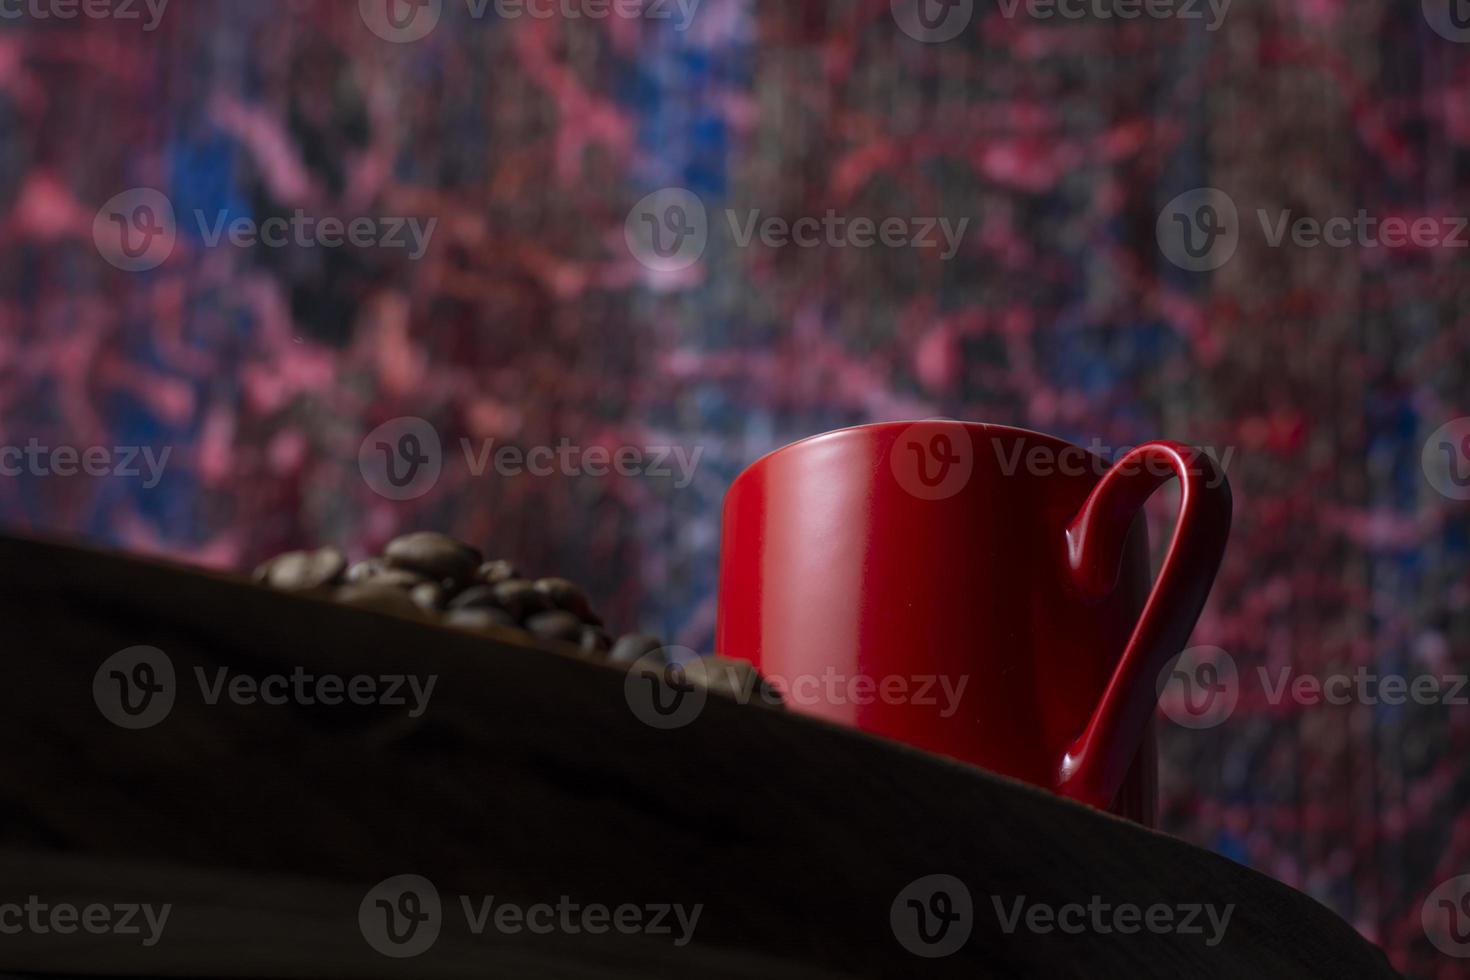 röd kaffekopp på träbord, kaffekorn, abstrakt bakgrund foto